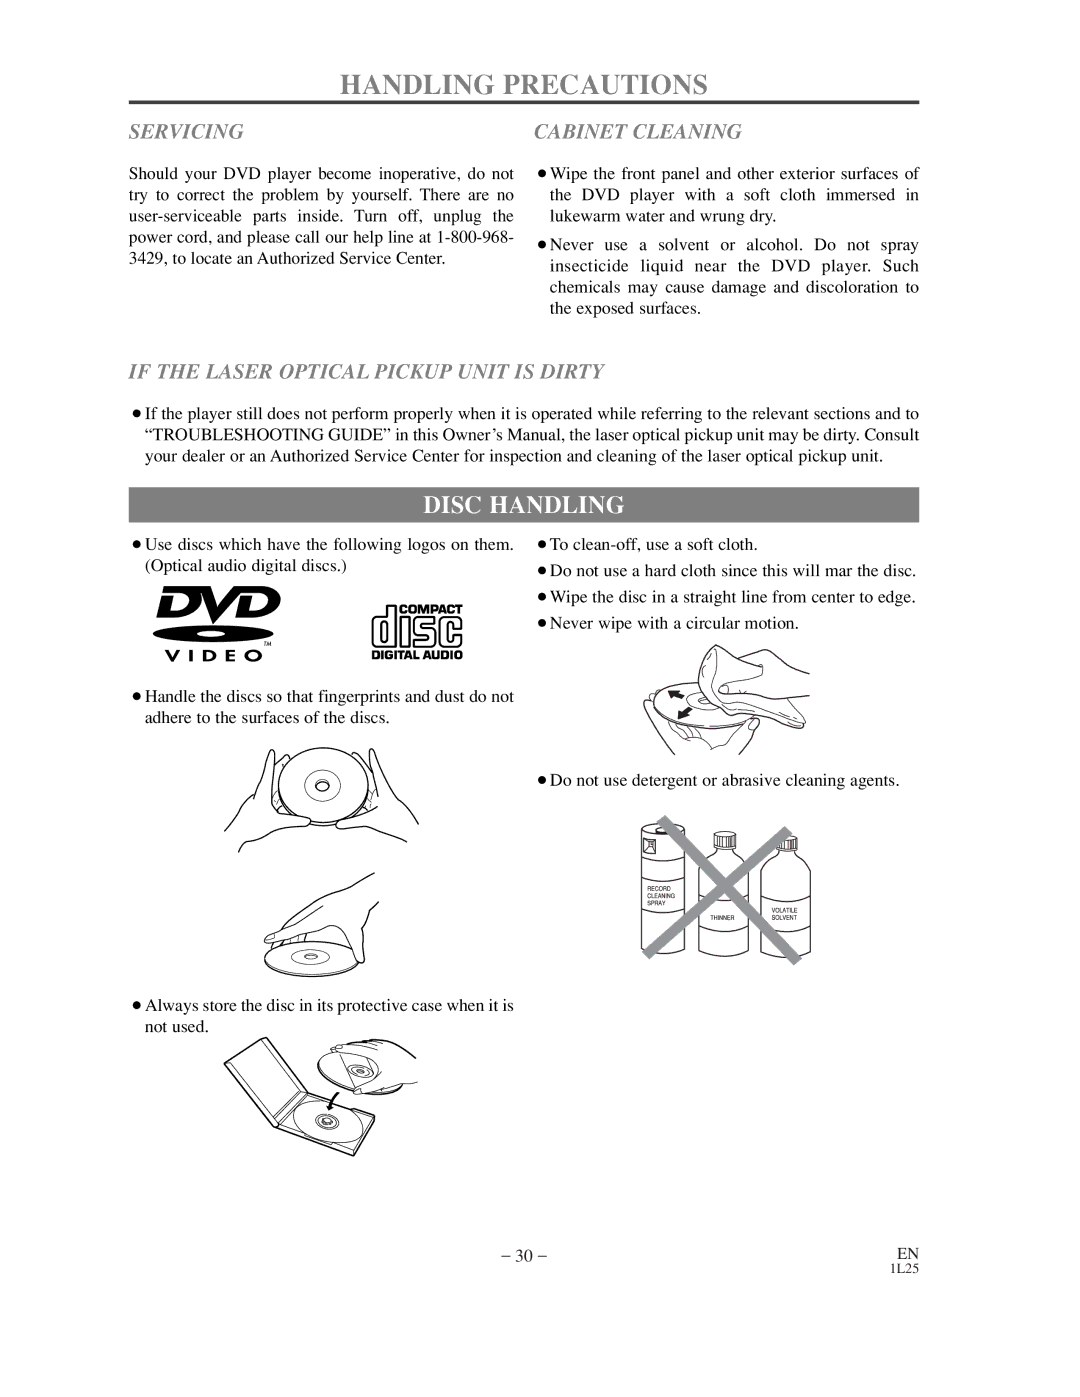 Sylvania DVL100C owner manual Handling Precautions, Disc Handling 